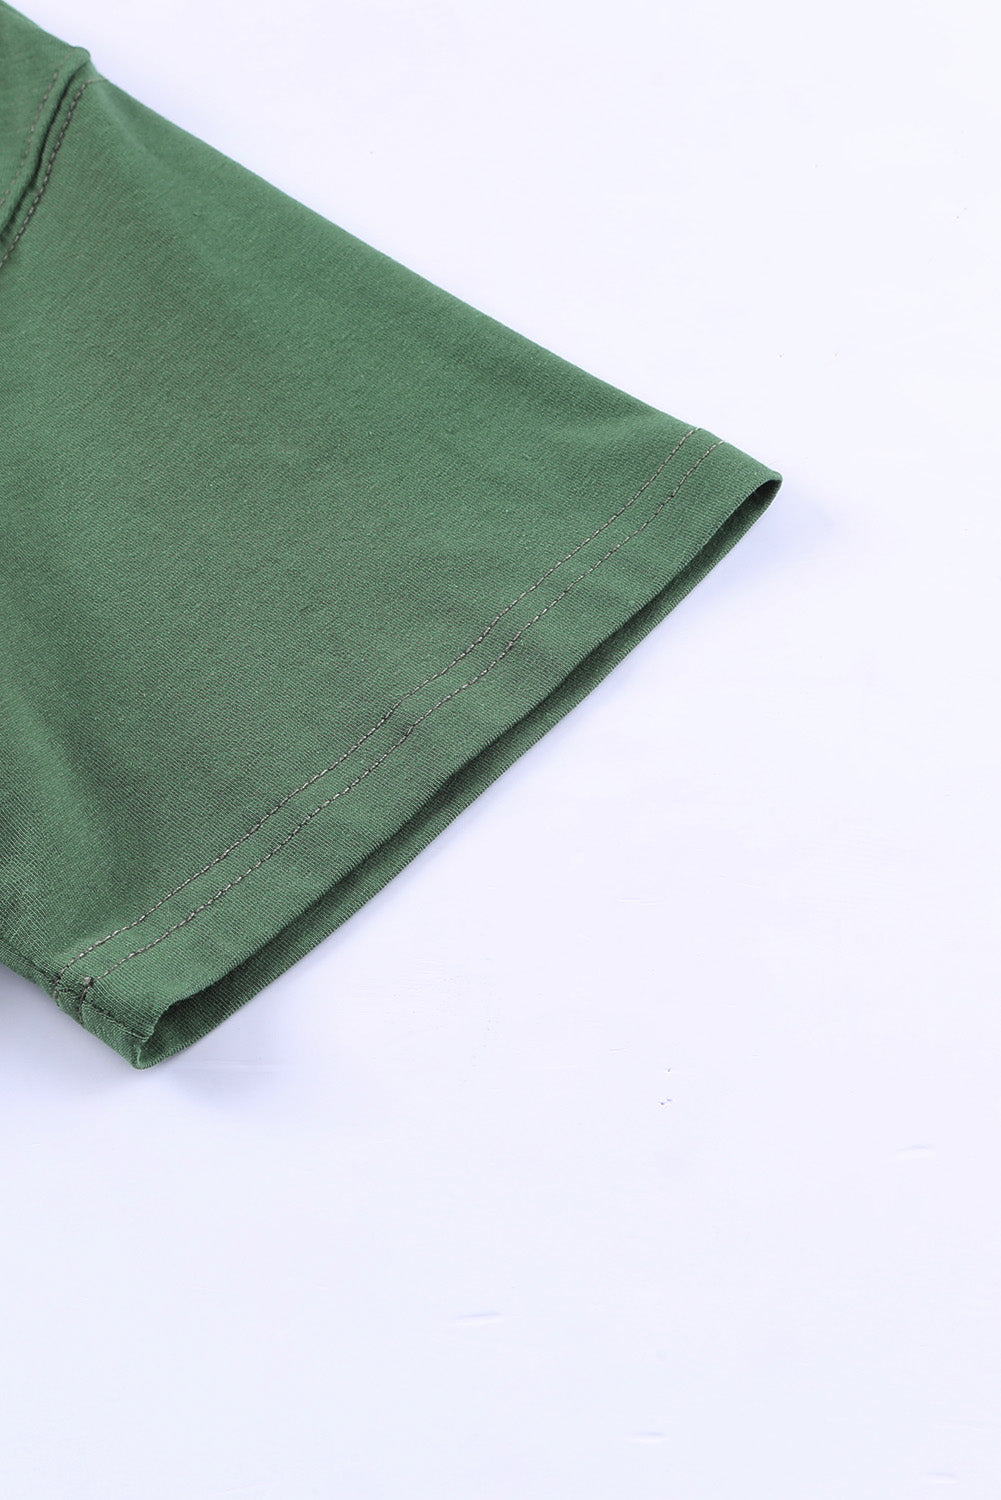 T-shirt décontracté à manches courtes et poche florale vert